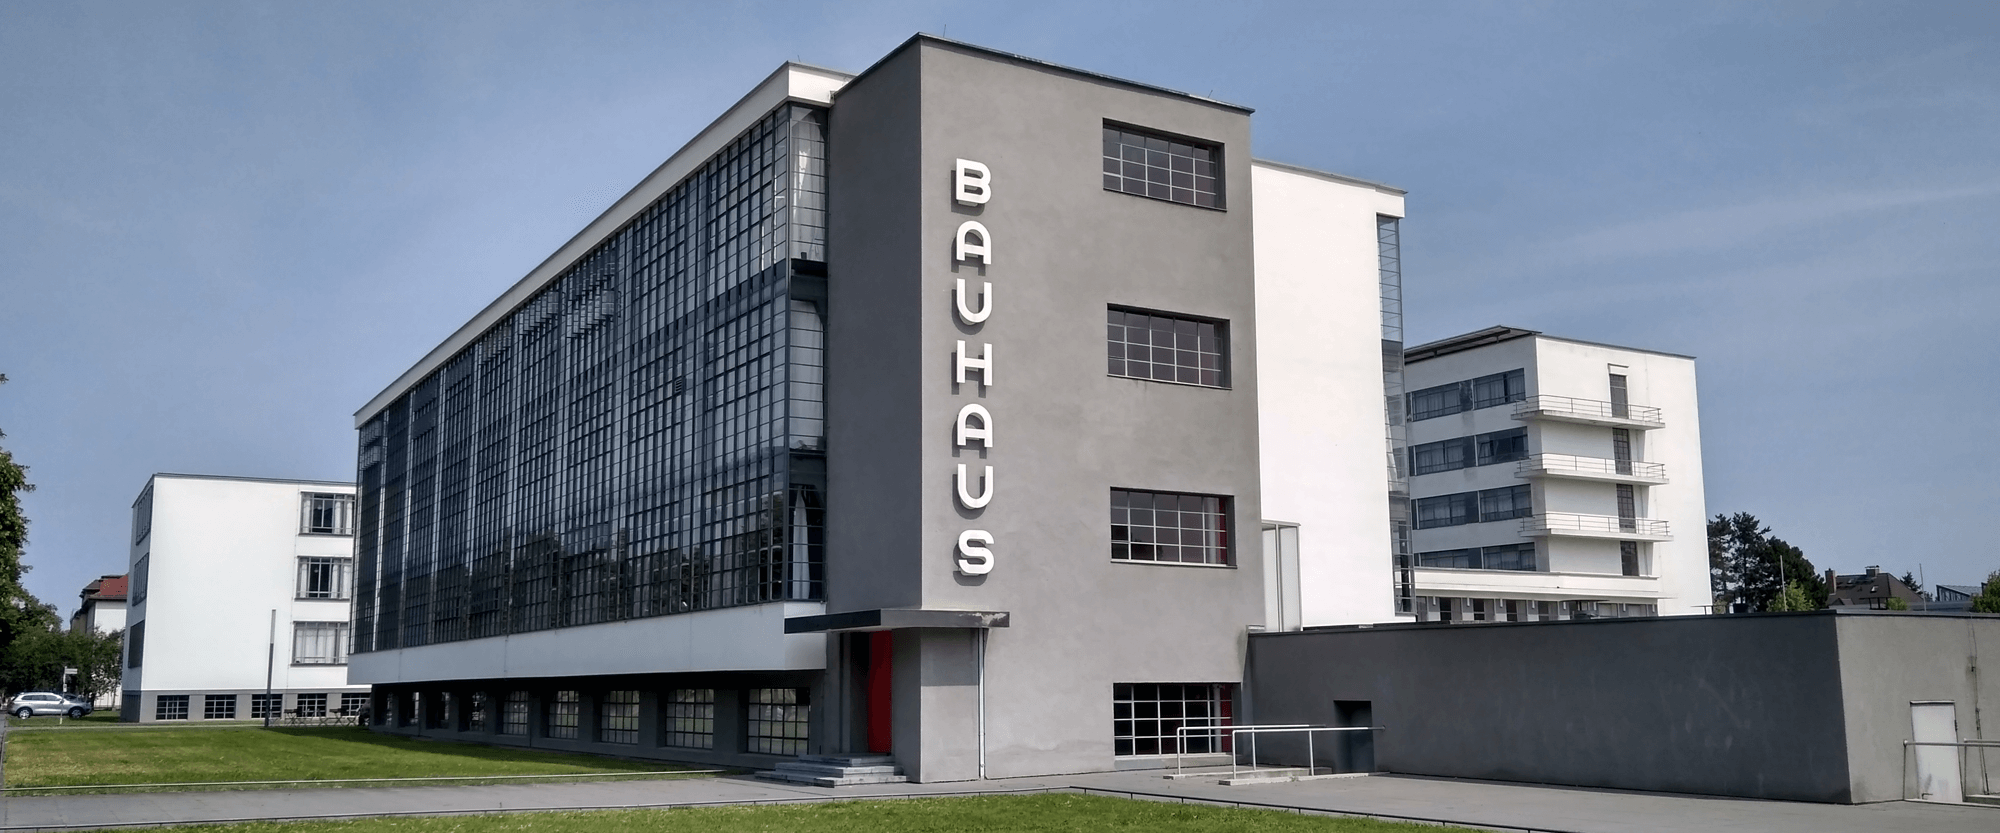 BauhausBuilding